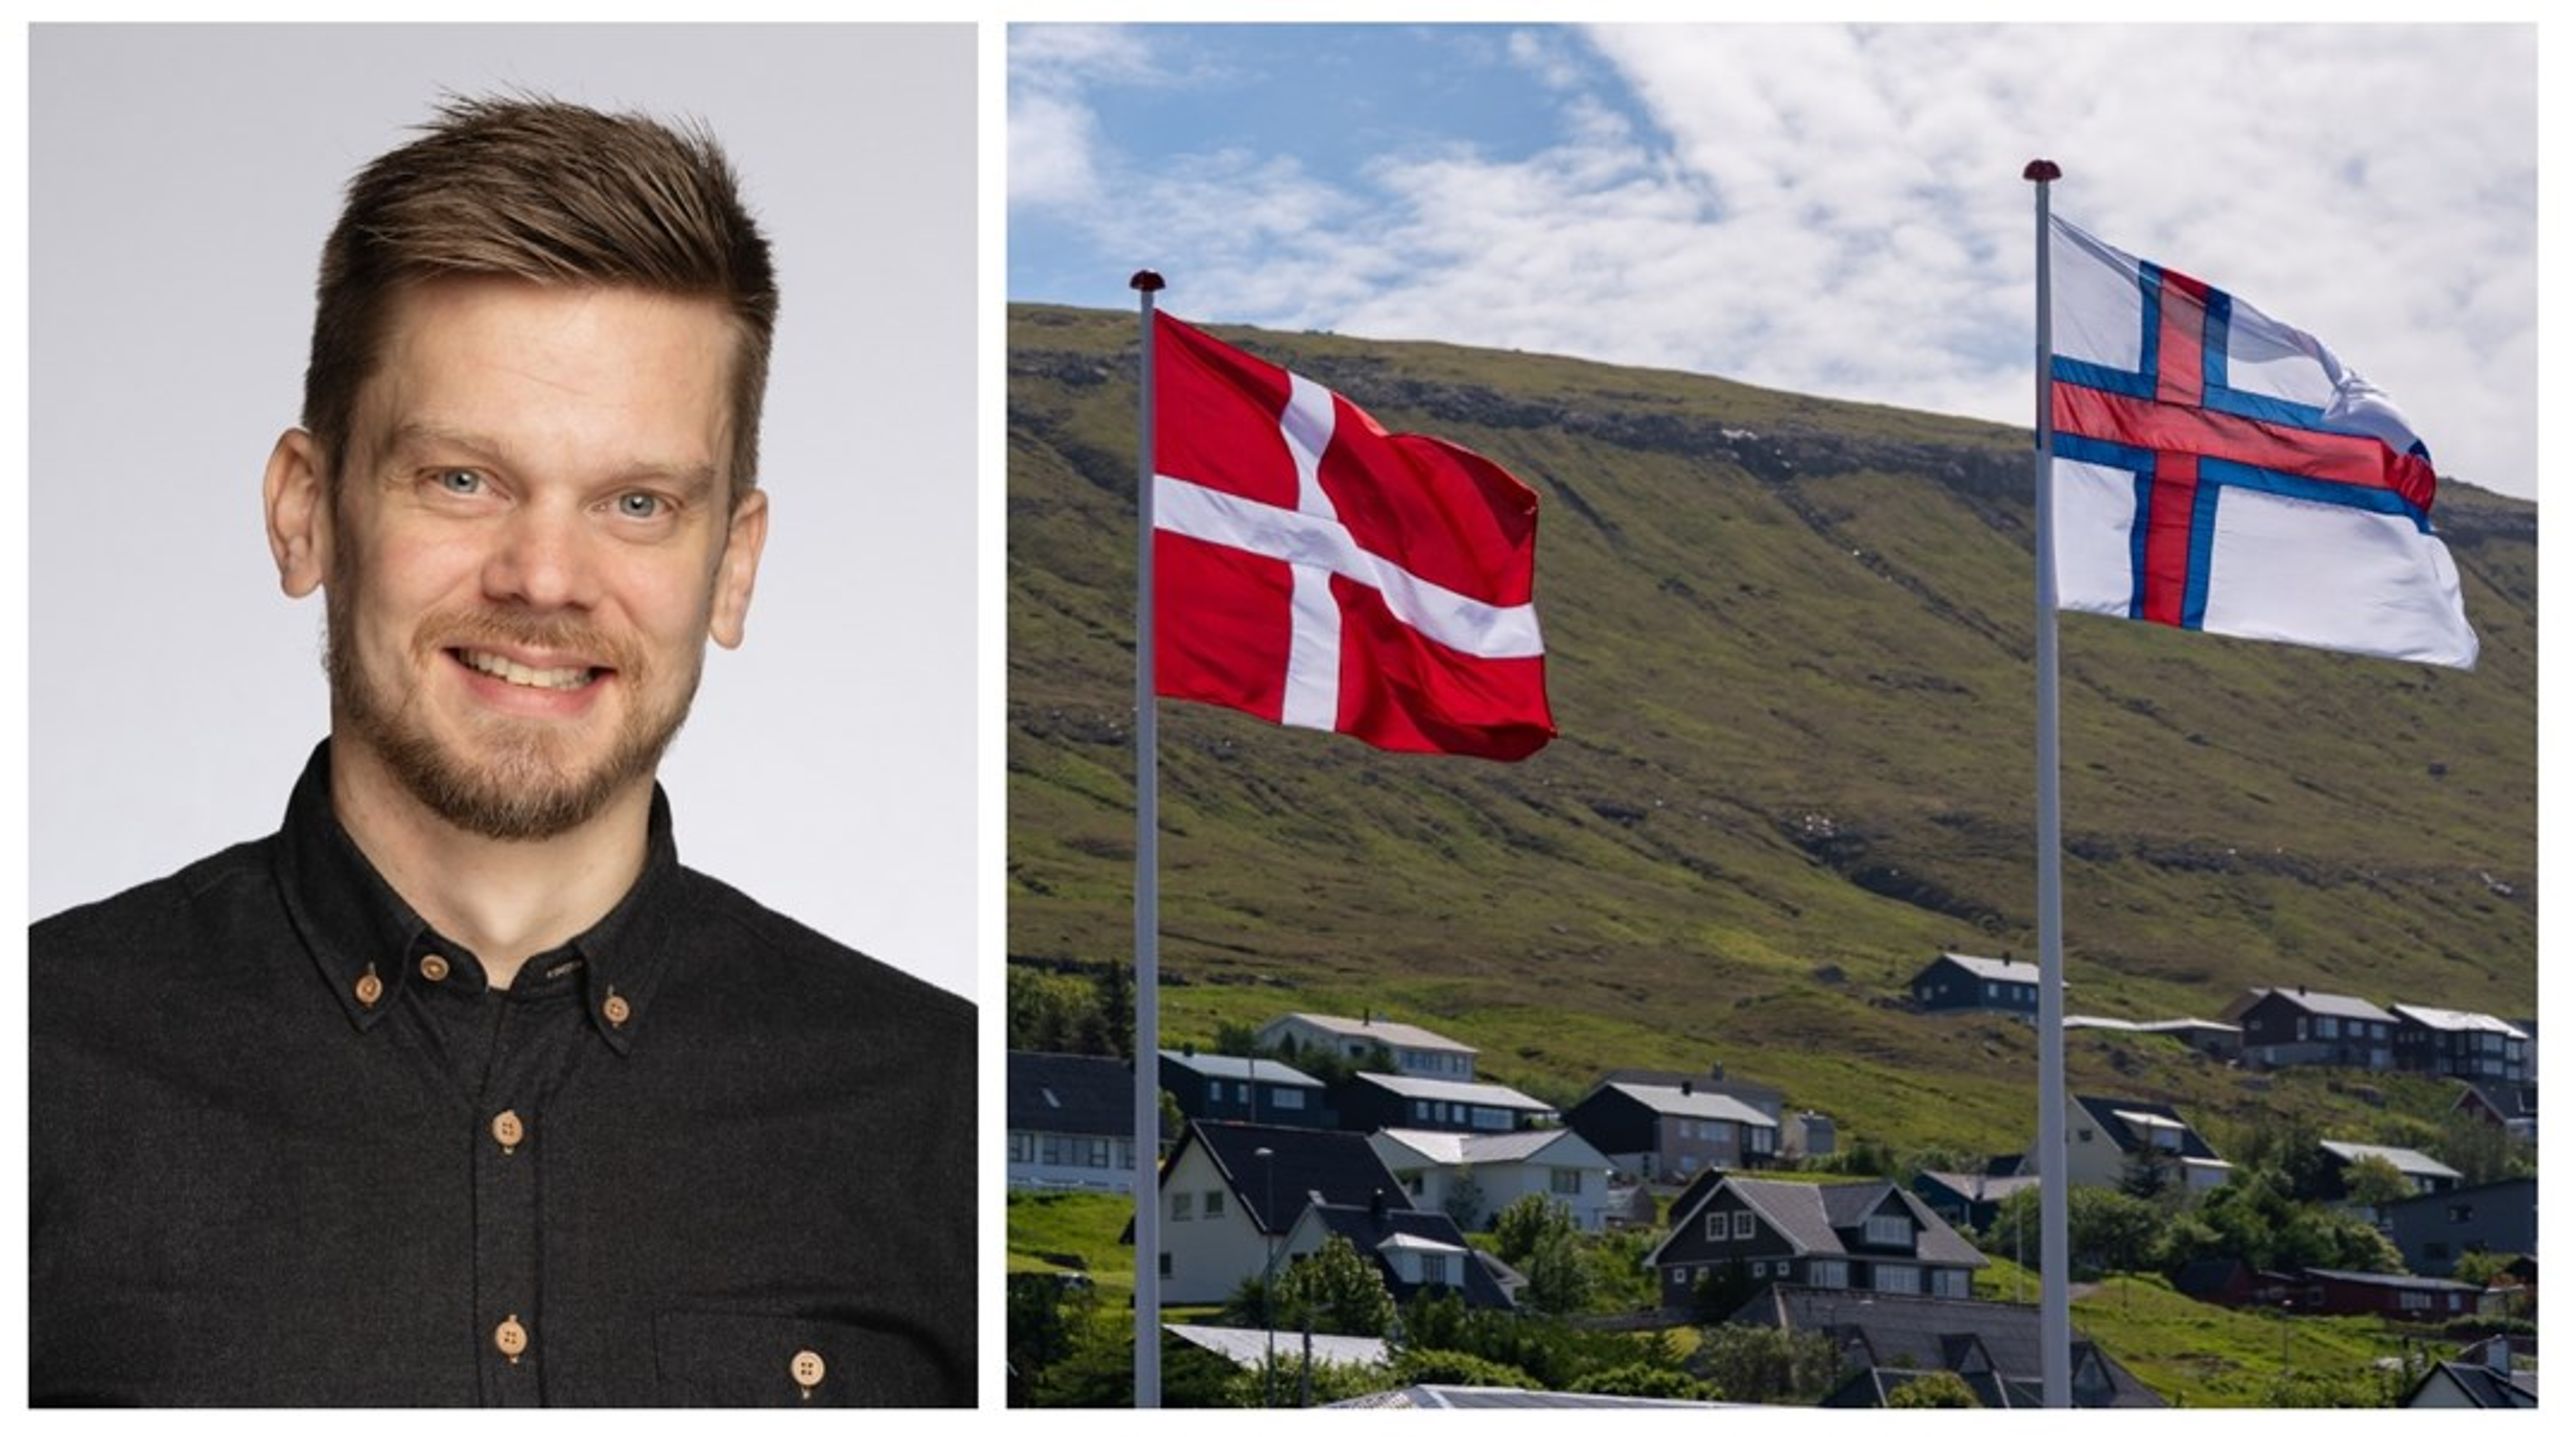 Færøske ambitioner om medlemskab i internationale fællesskaber som FN, Nato, EØS, WTO, OIC og Nordisk Råd er blot en genspejling af færingernes selvopfattelse som en selvstændig nation, skriver&nbsp;Rógvi Olavson.